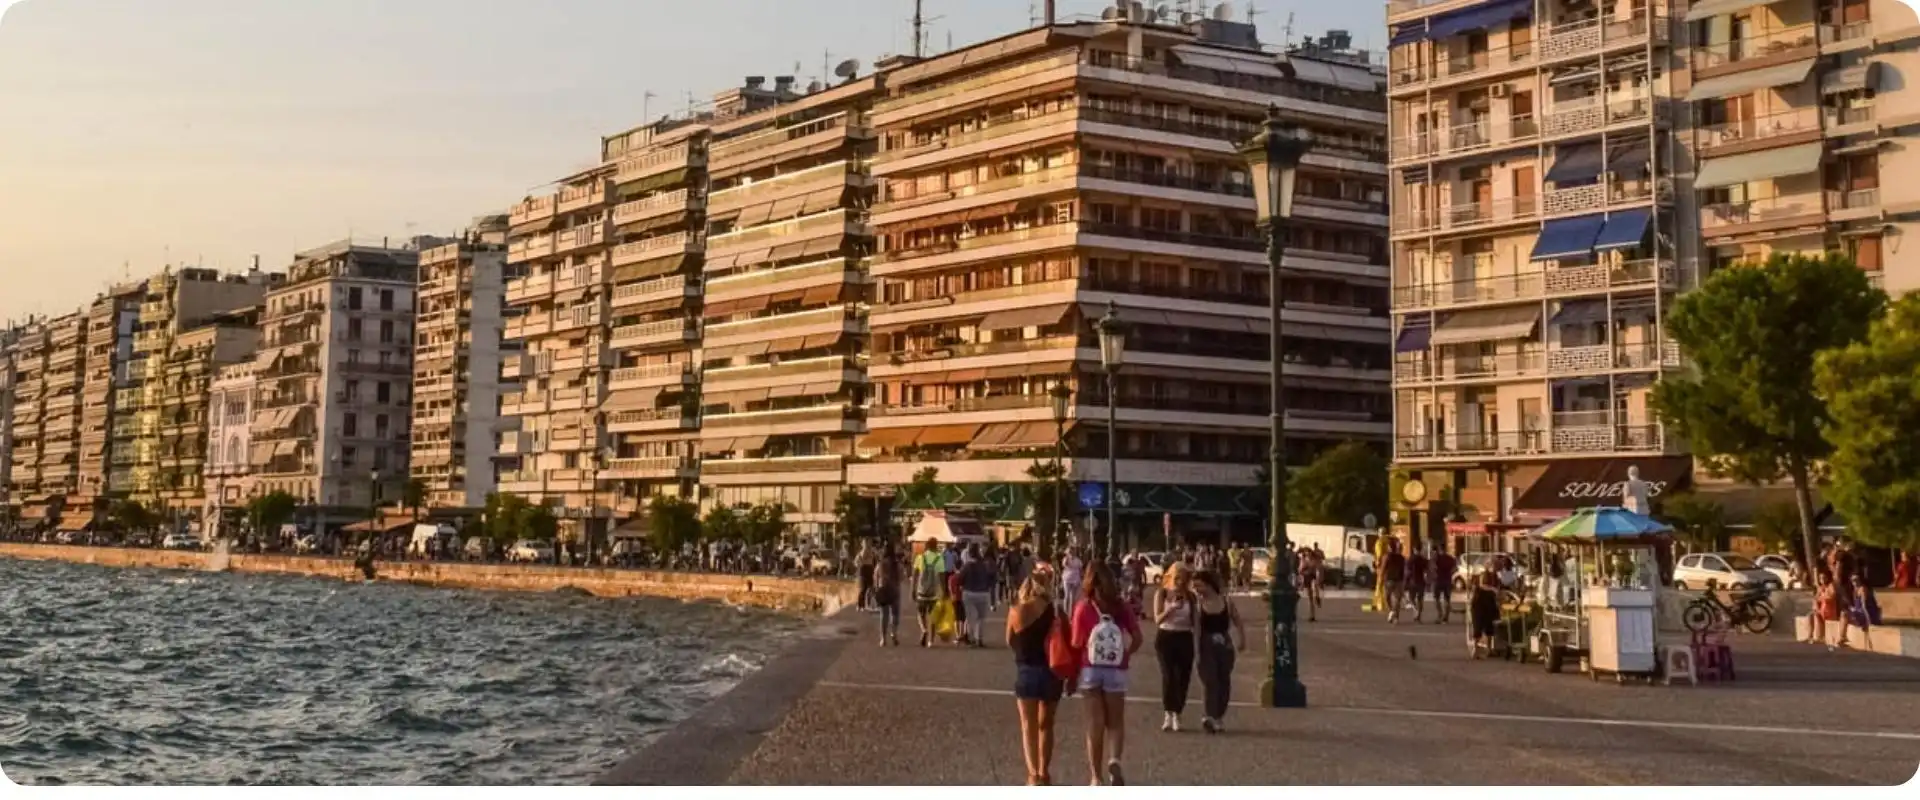 Thessaloniki charterrejse til grækenland flyv fra hamborg.webp